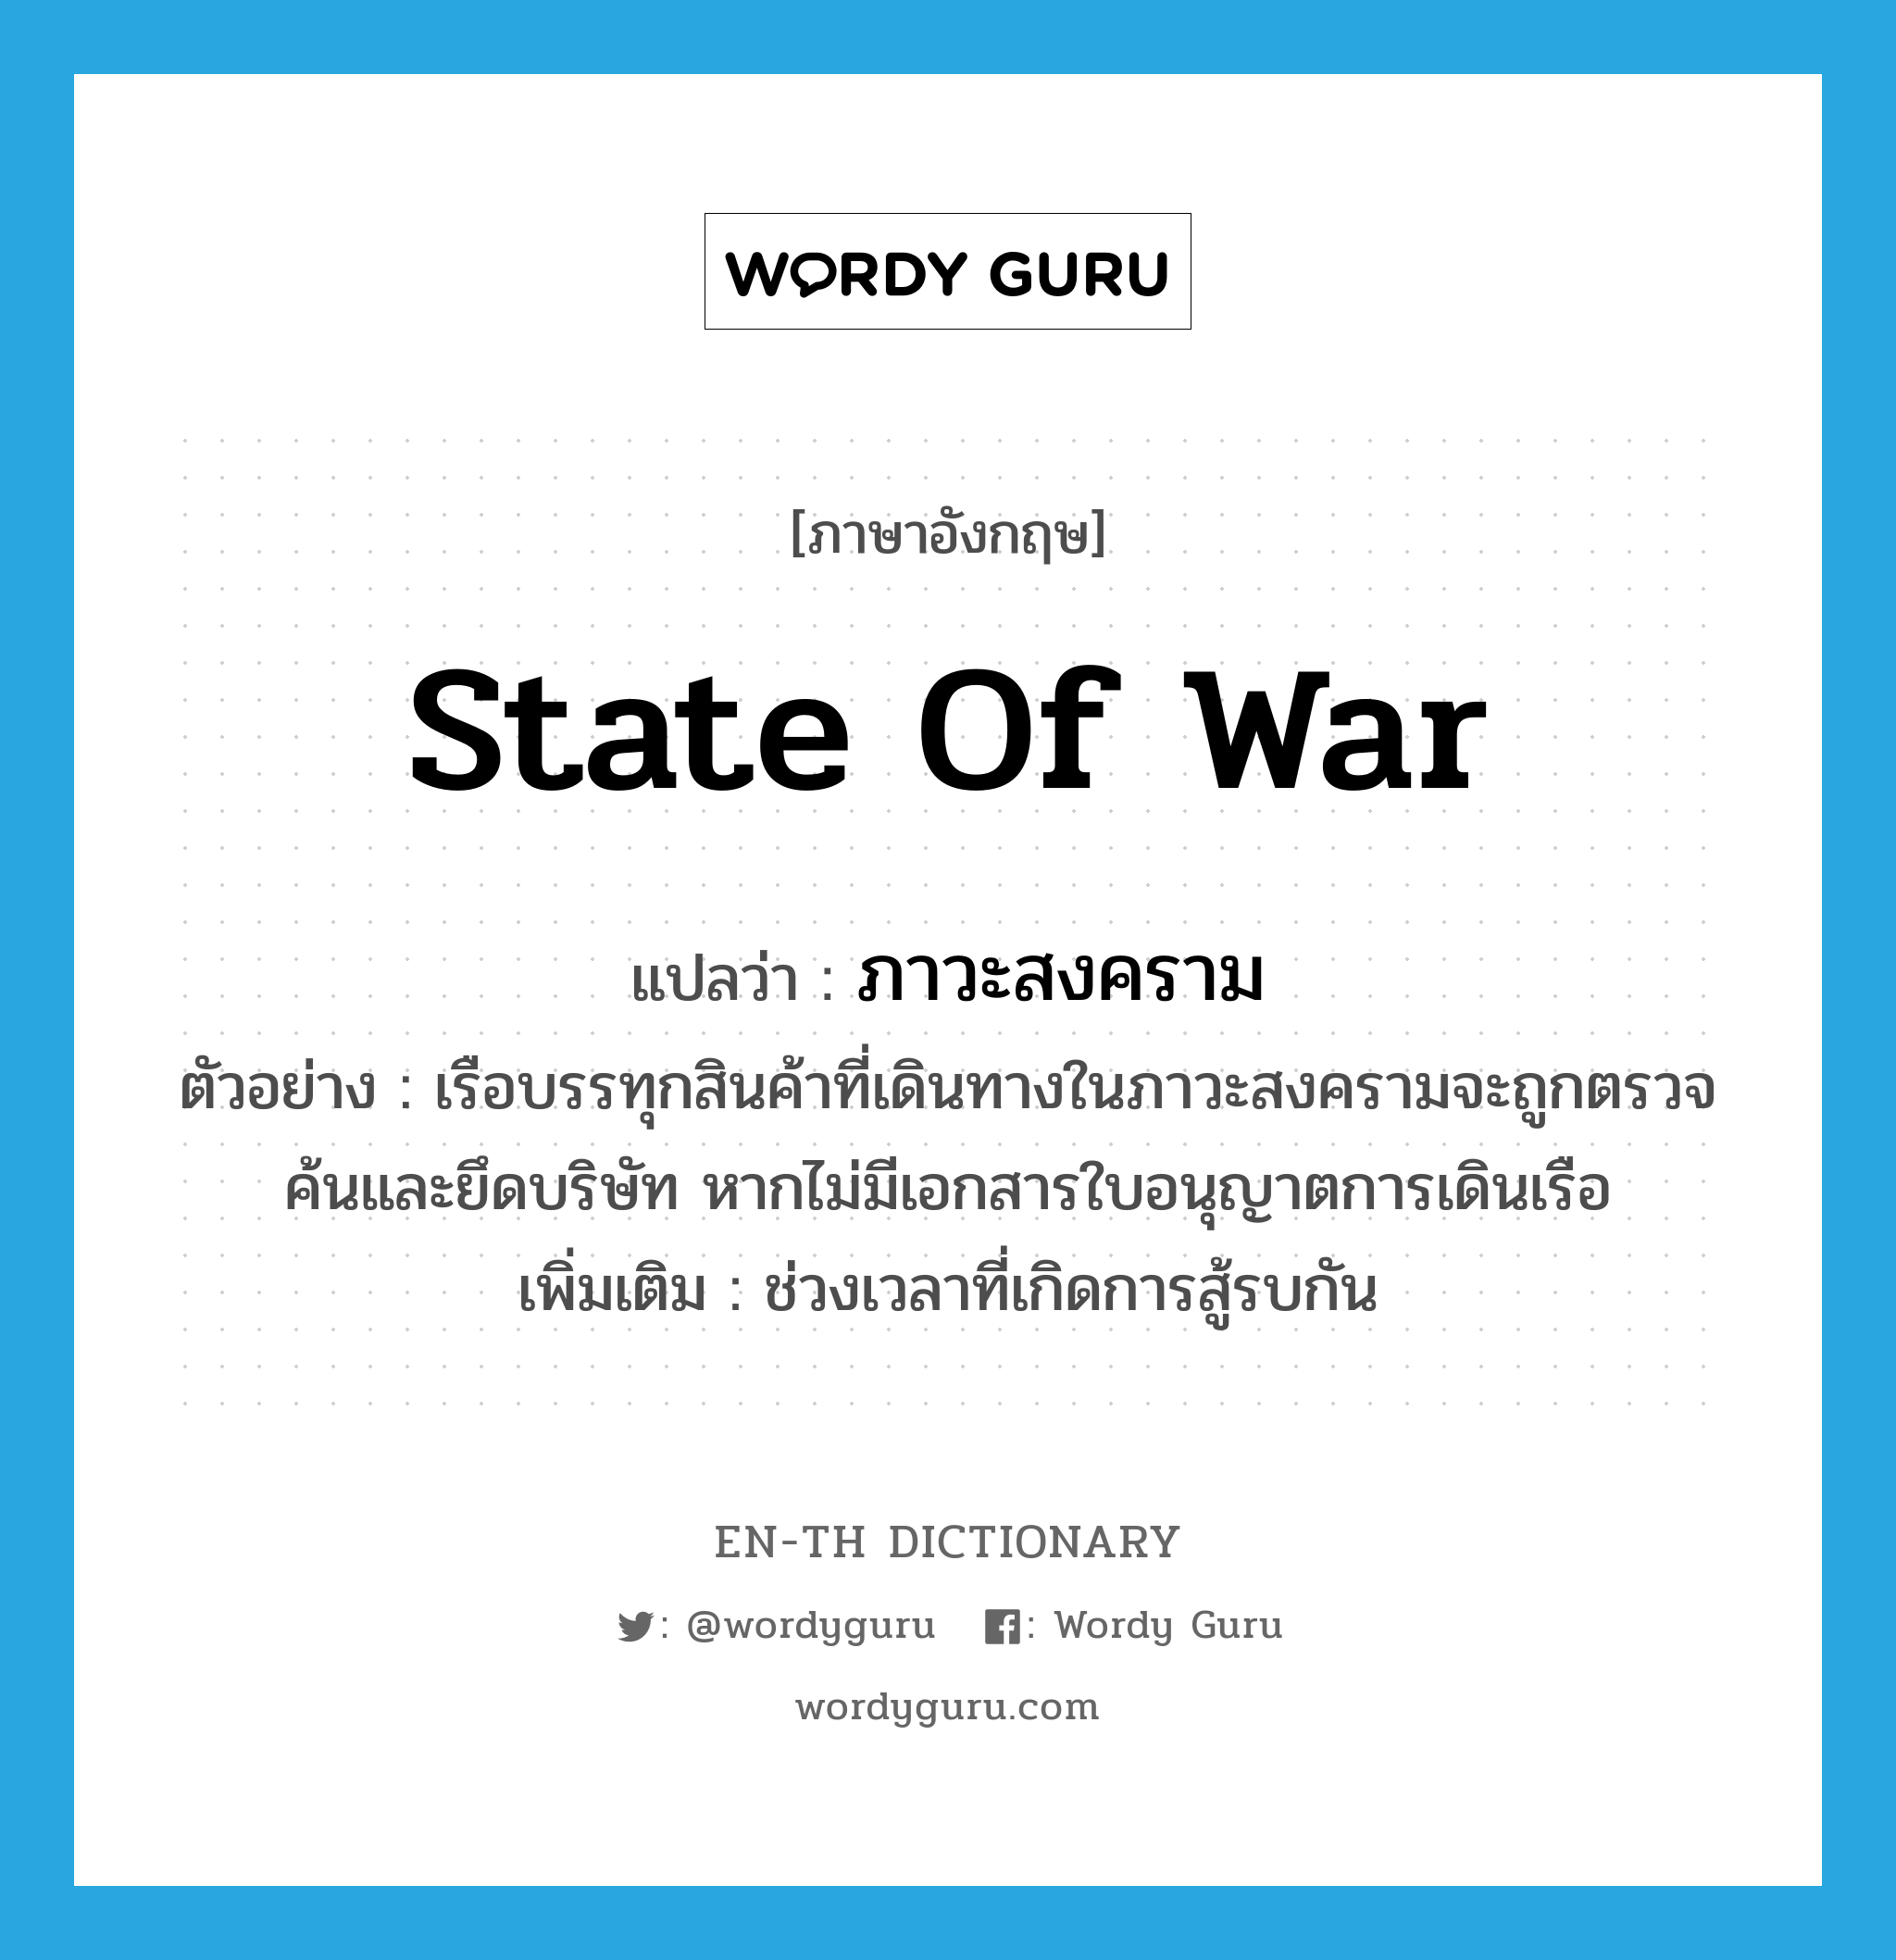 state of war แปลว่า?, คำศัพท์ภาษาอังกฤษ state of war แปลว่า ภาวะสงคราม ประเภท N ตัวอย่าง เรือบรรทุกสินค้าที่เดินทางในภาวะสงครามจะถูกตรวจค้นและยึดบริษัท หากไม่มีเอกสารใบอนุญาตการเดินเรือ เพิ่มเติม ช่วงเวลาที่เกิดการสู้รบกัน หมวด N